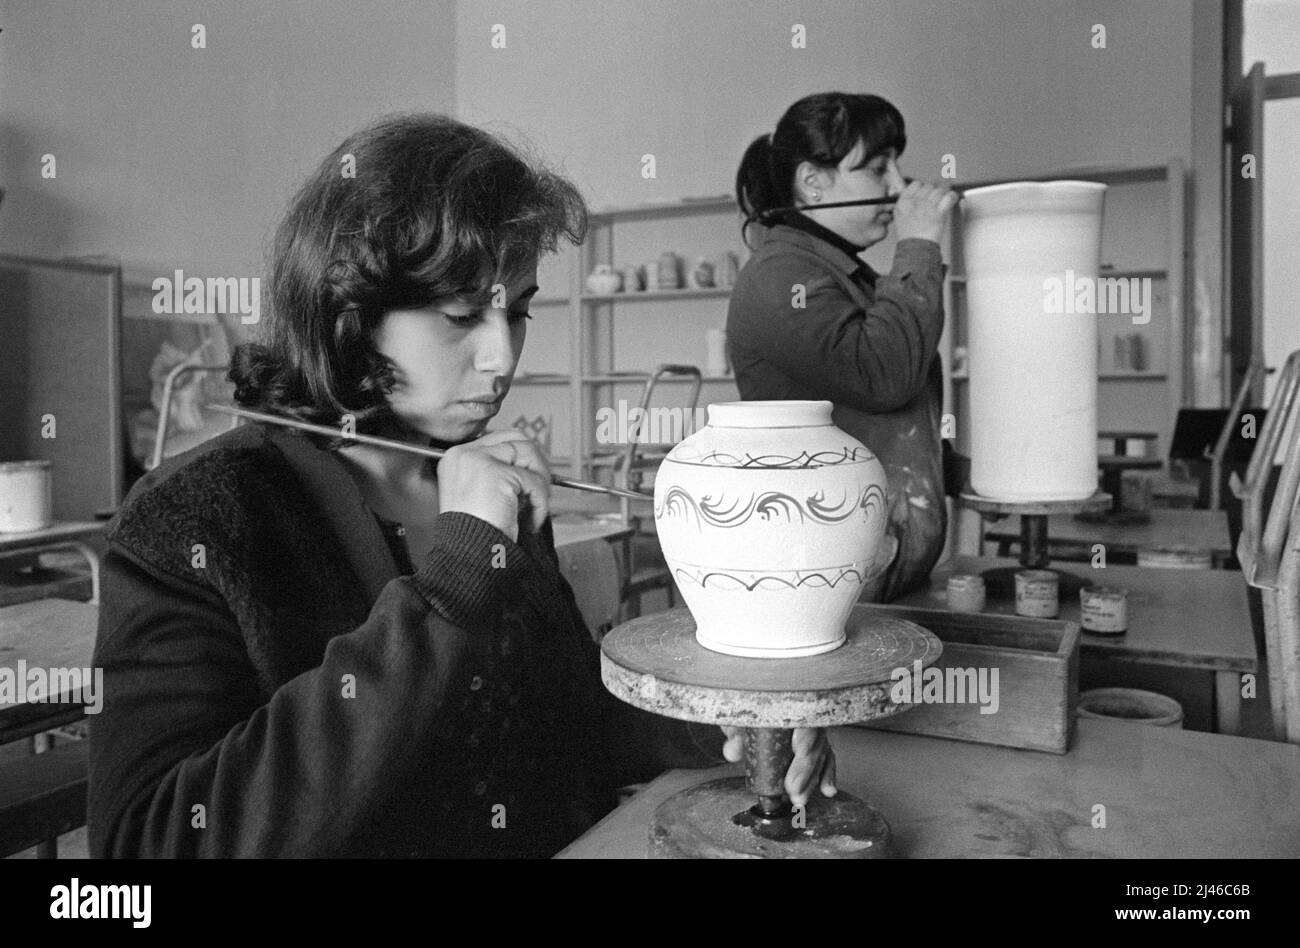 Sicile (Italie, école de céramique professionnelle à Santo Stefano di Camastra (Messina), avril 1980 Banque D'Images